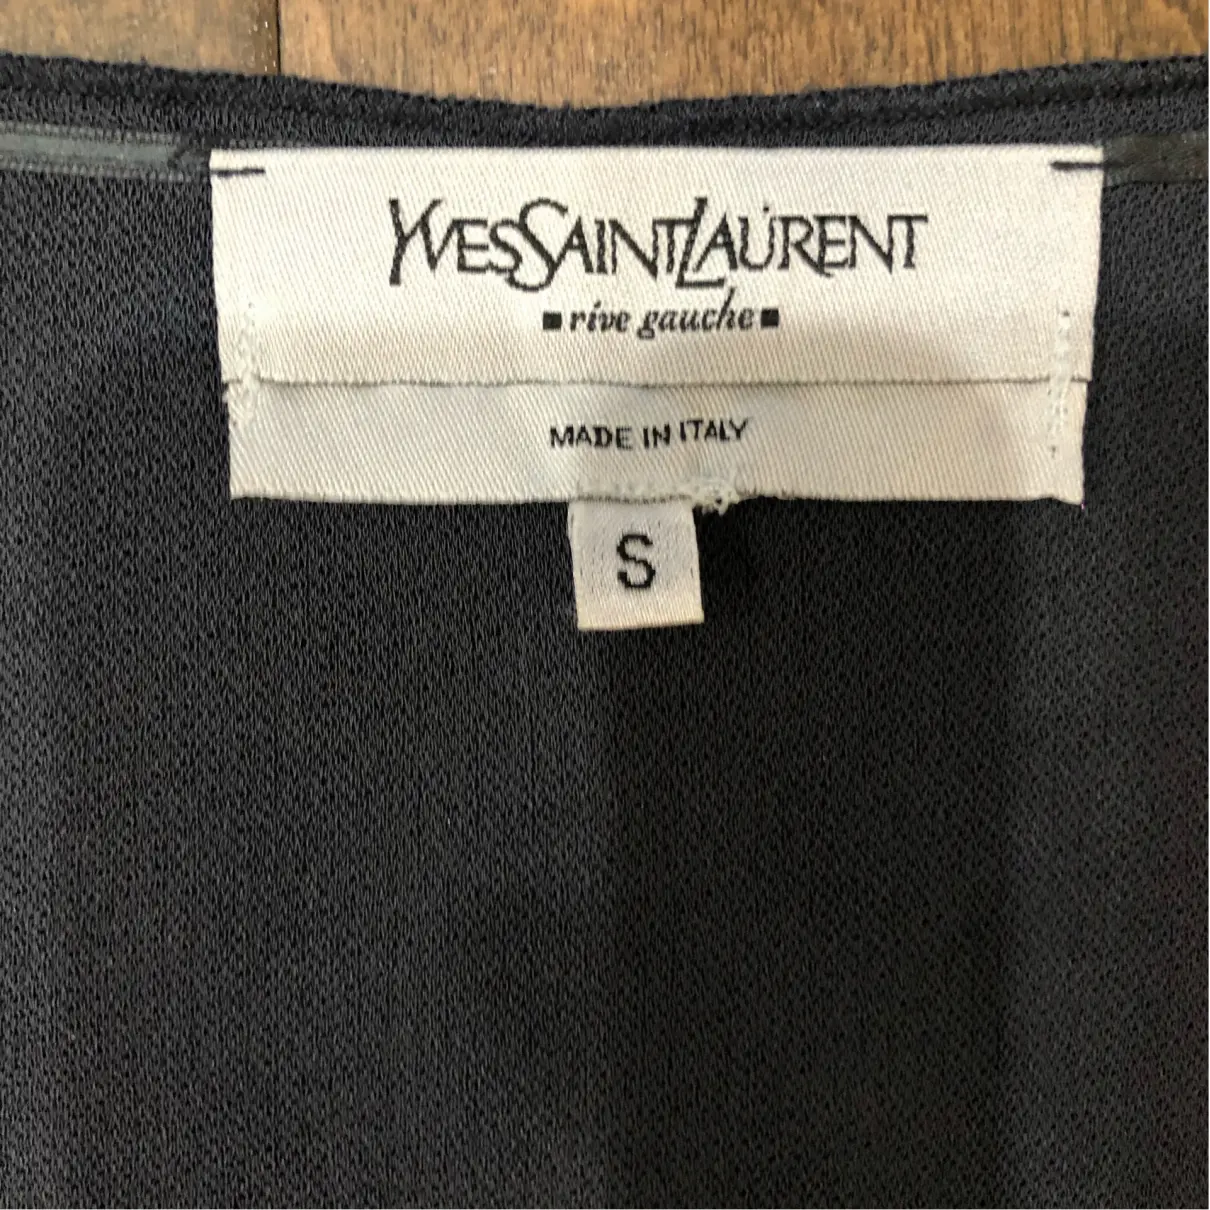 Blouse Yves Saint Laurent - Vintage